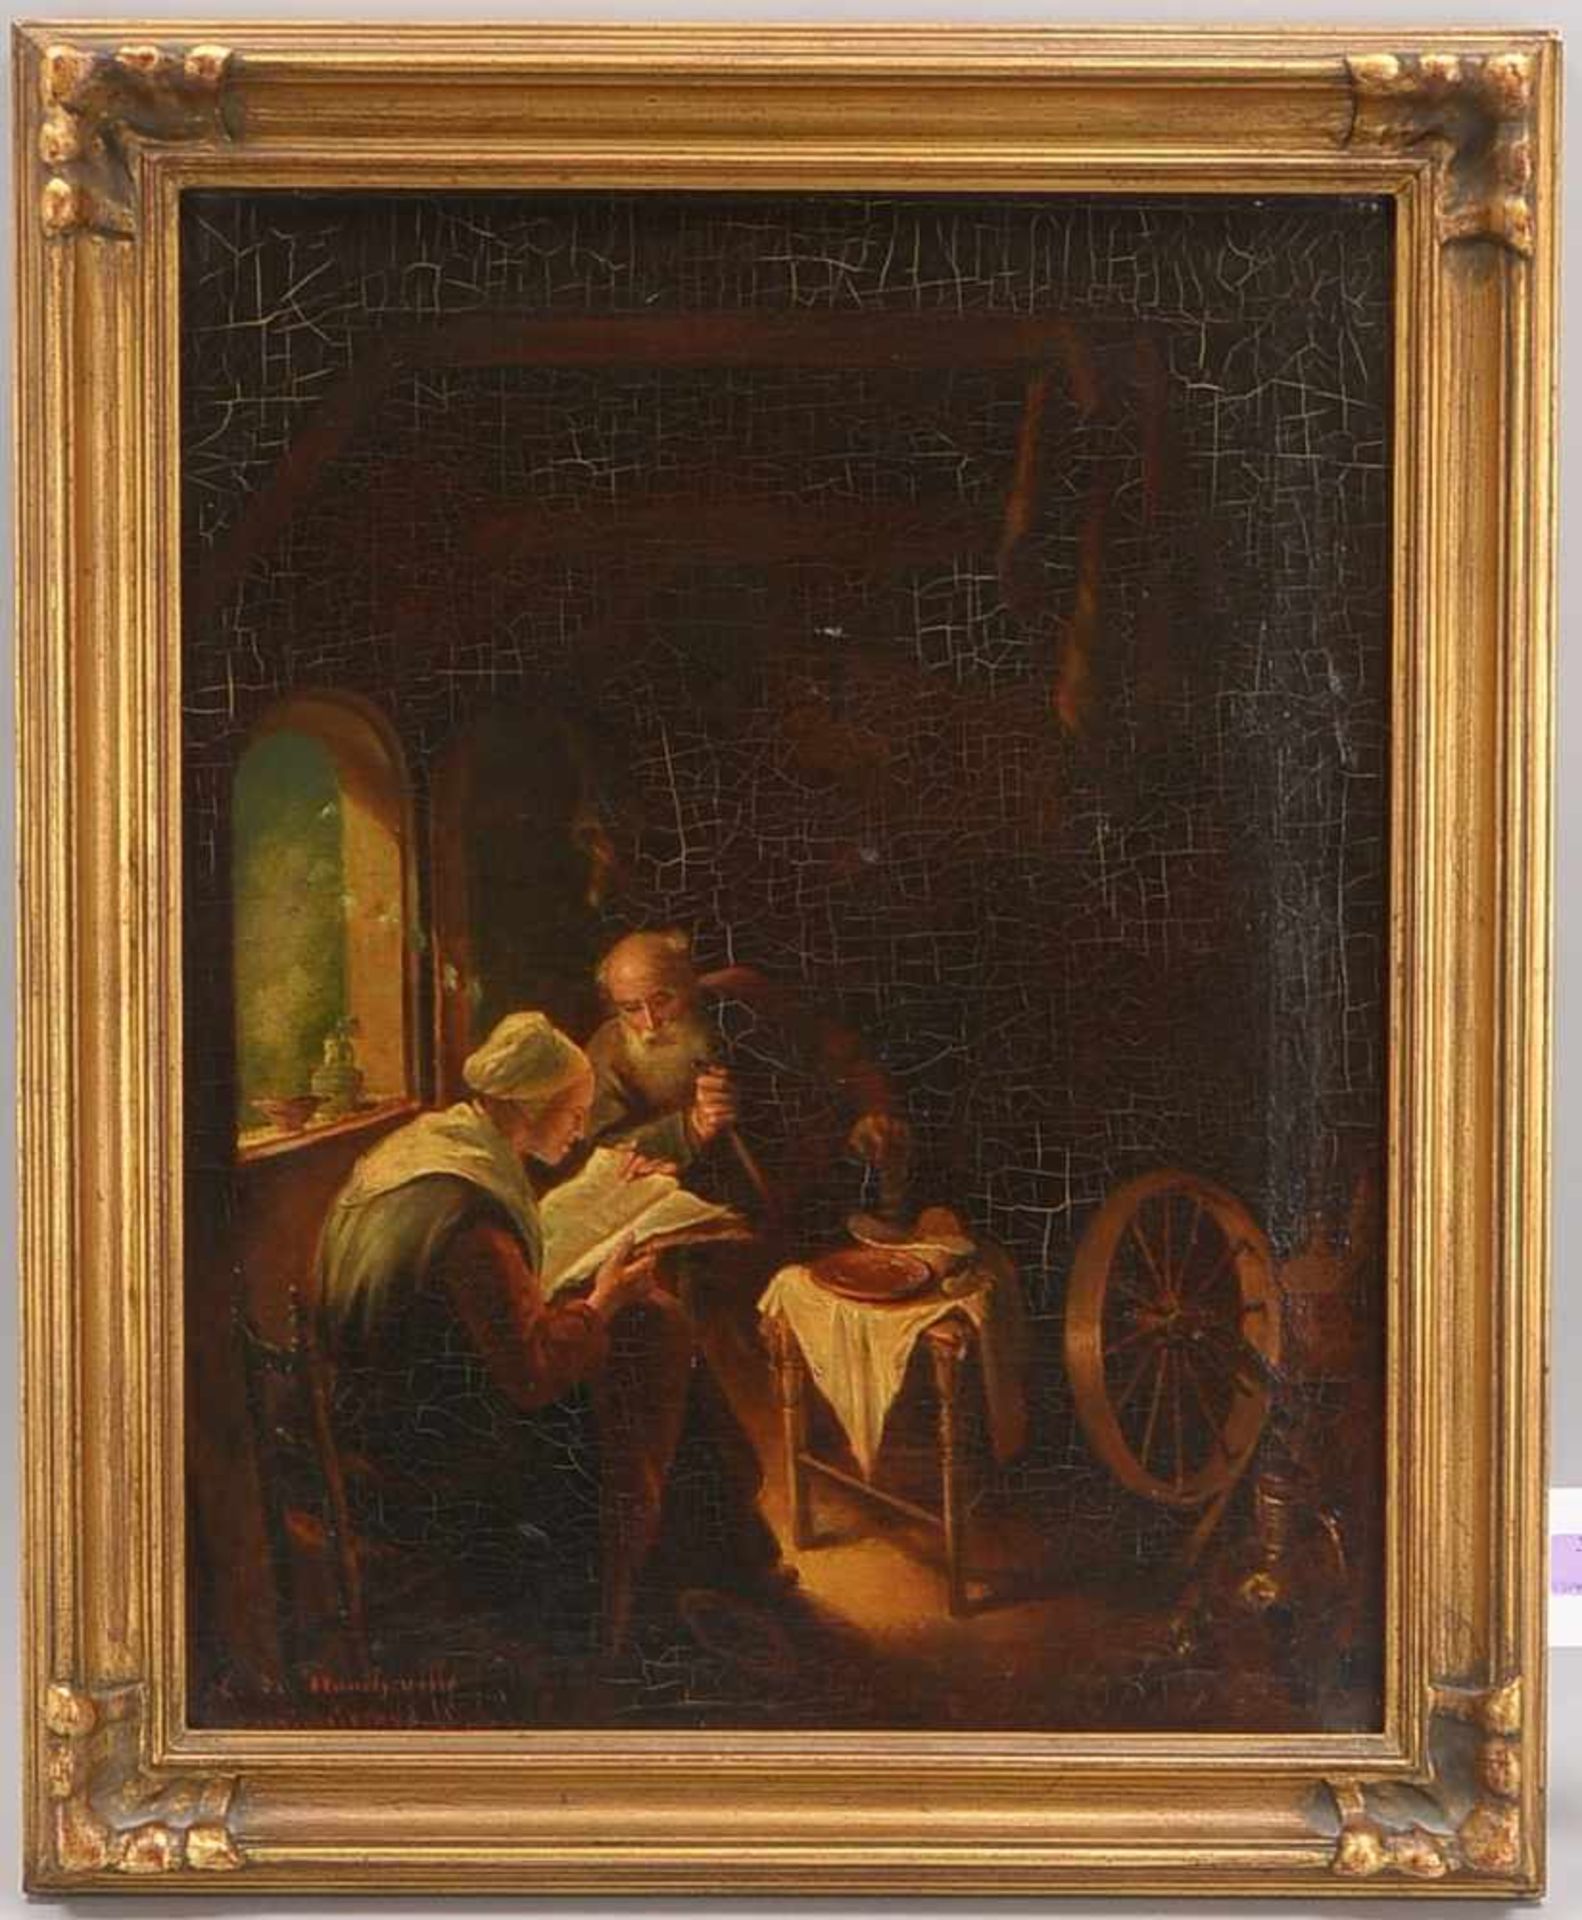 Gemälde, 'Die Vorleserin' (nach Gérard Dou, 1913 - 1675, niederländischer Maler des Barocks), Öl/Lw,